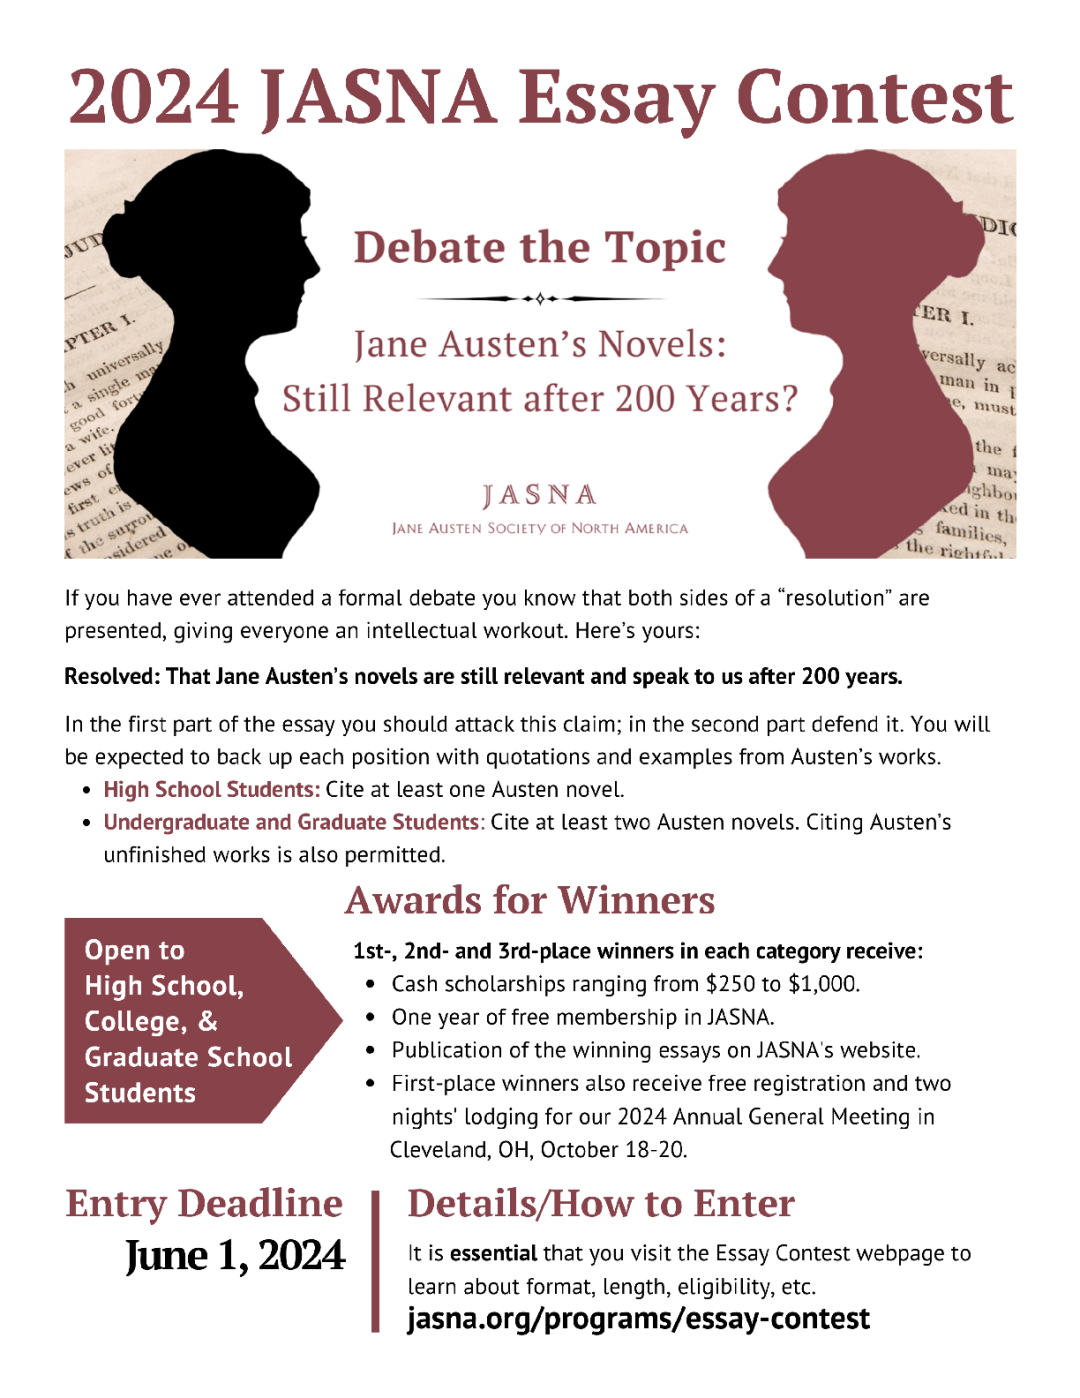 高含金量写作竞赛｜简 · 奥斯汀写作竞赛 JASNA Essay Contest 来了！